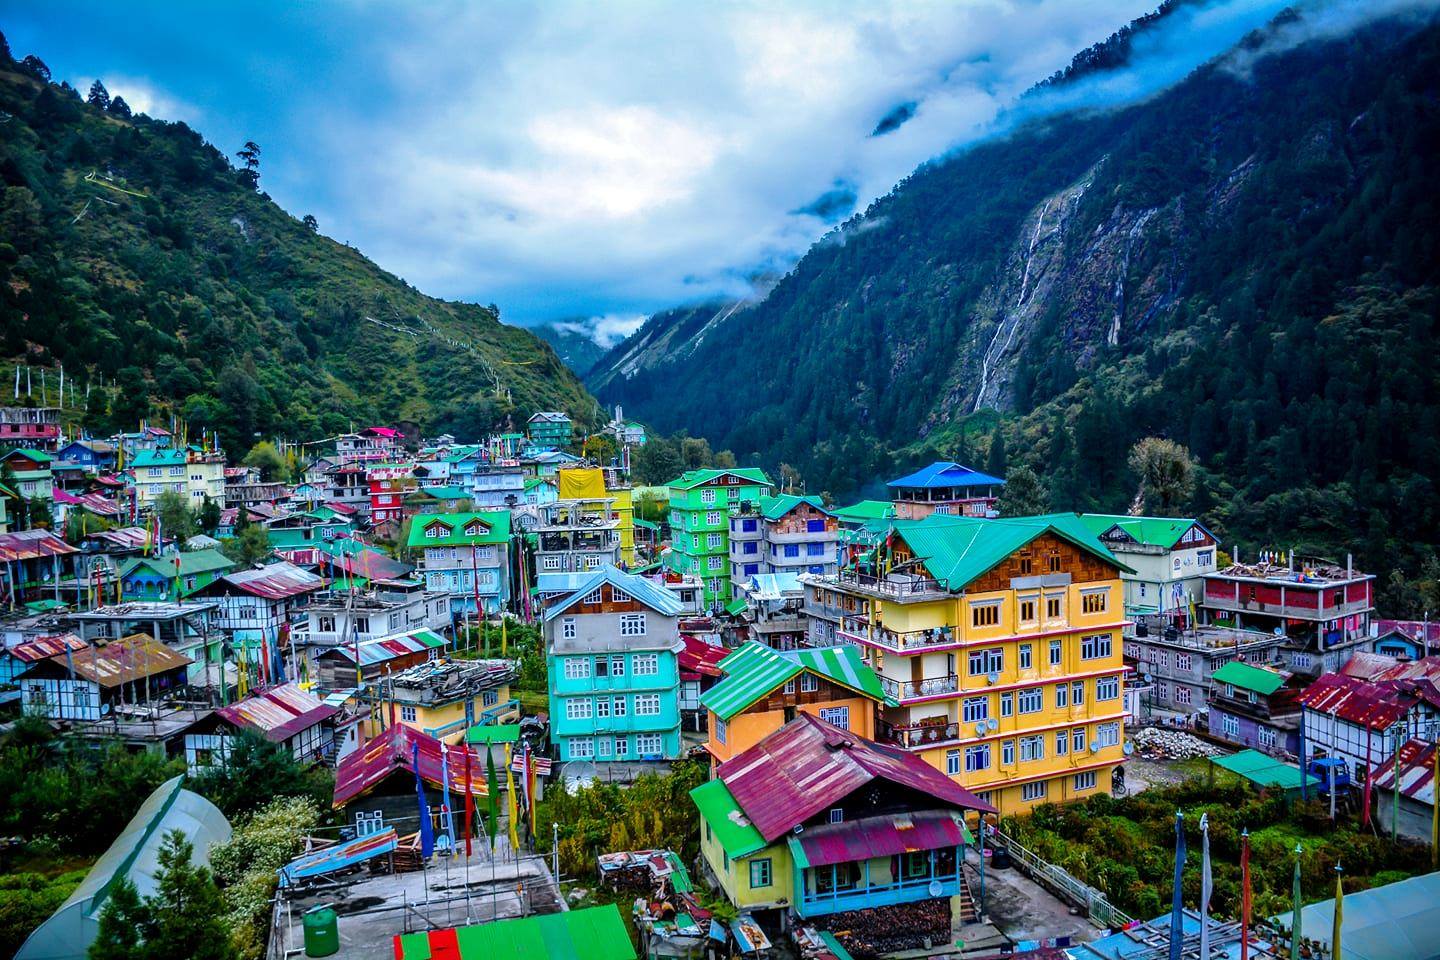 Splendid Sikkim